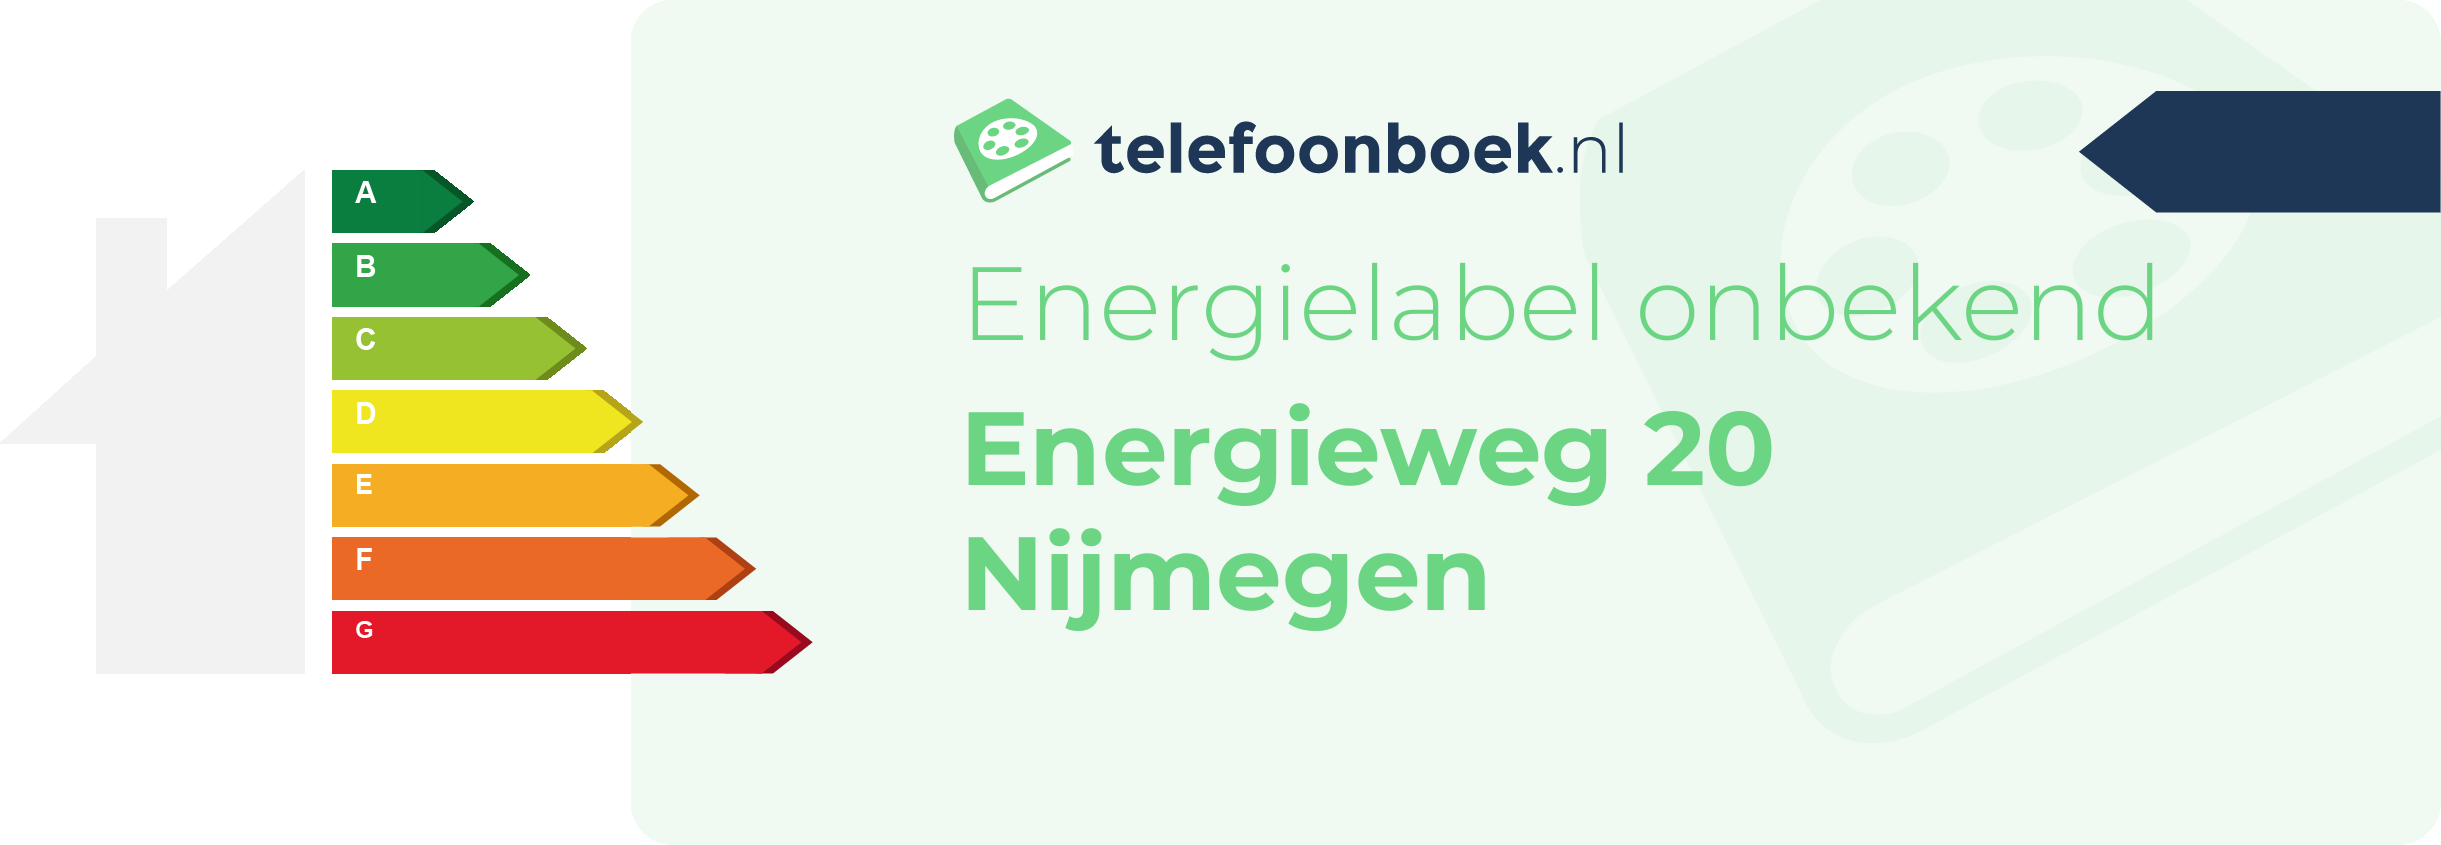 Energielabel Energieweg 20 Nijmegen